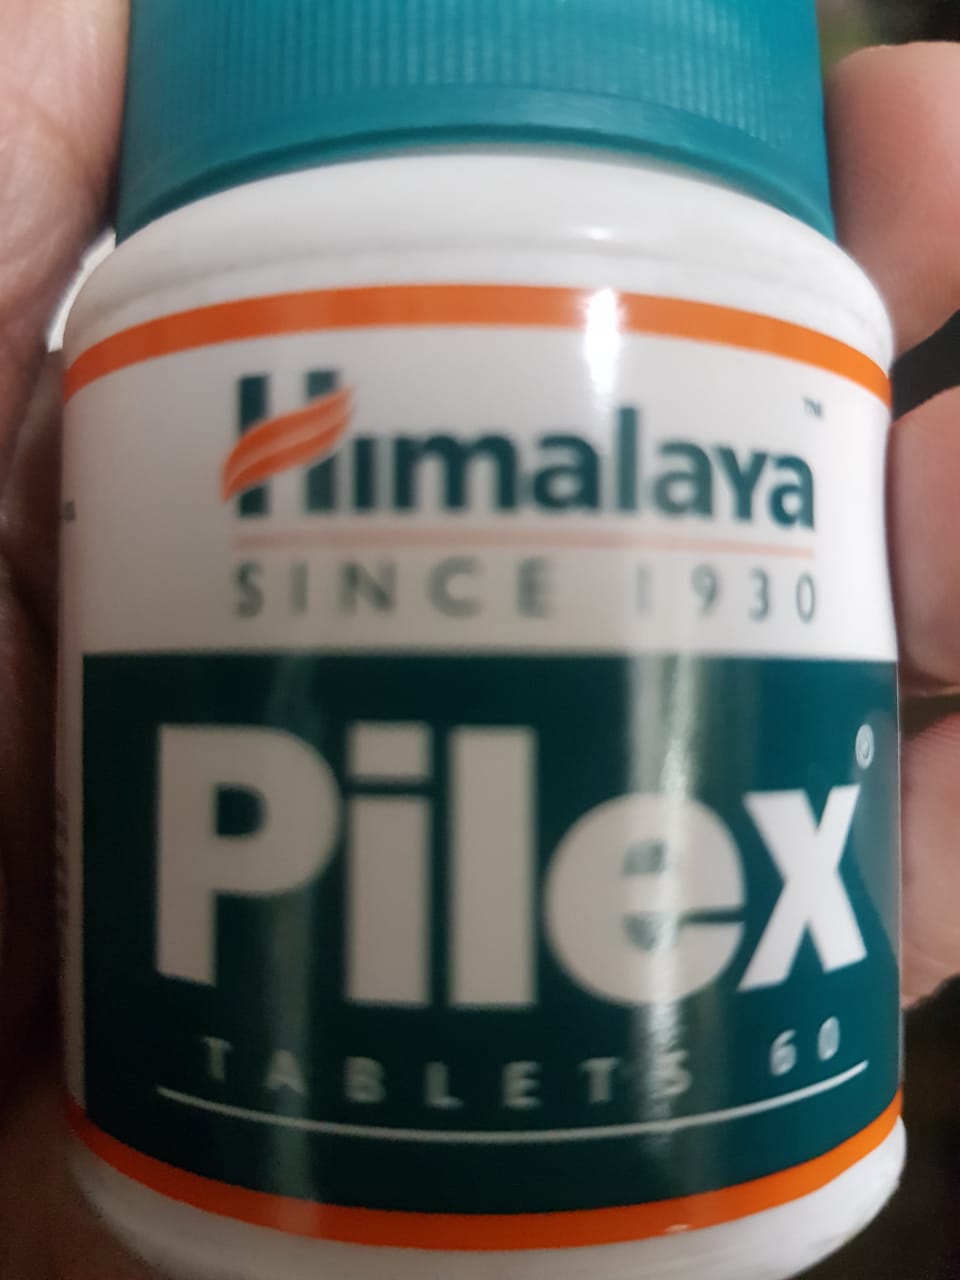 how to use himalaya pilex tablet